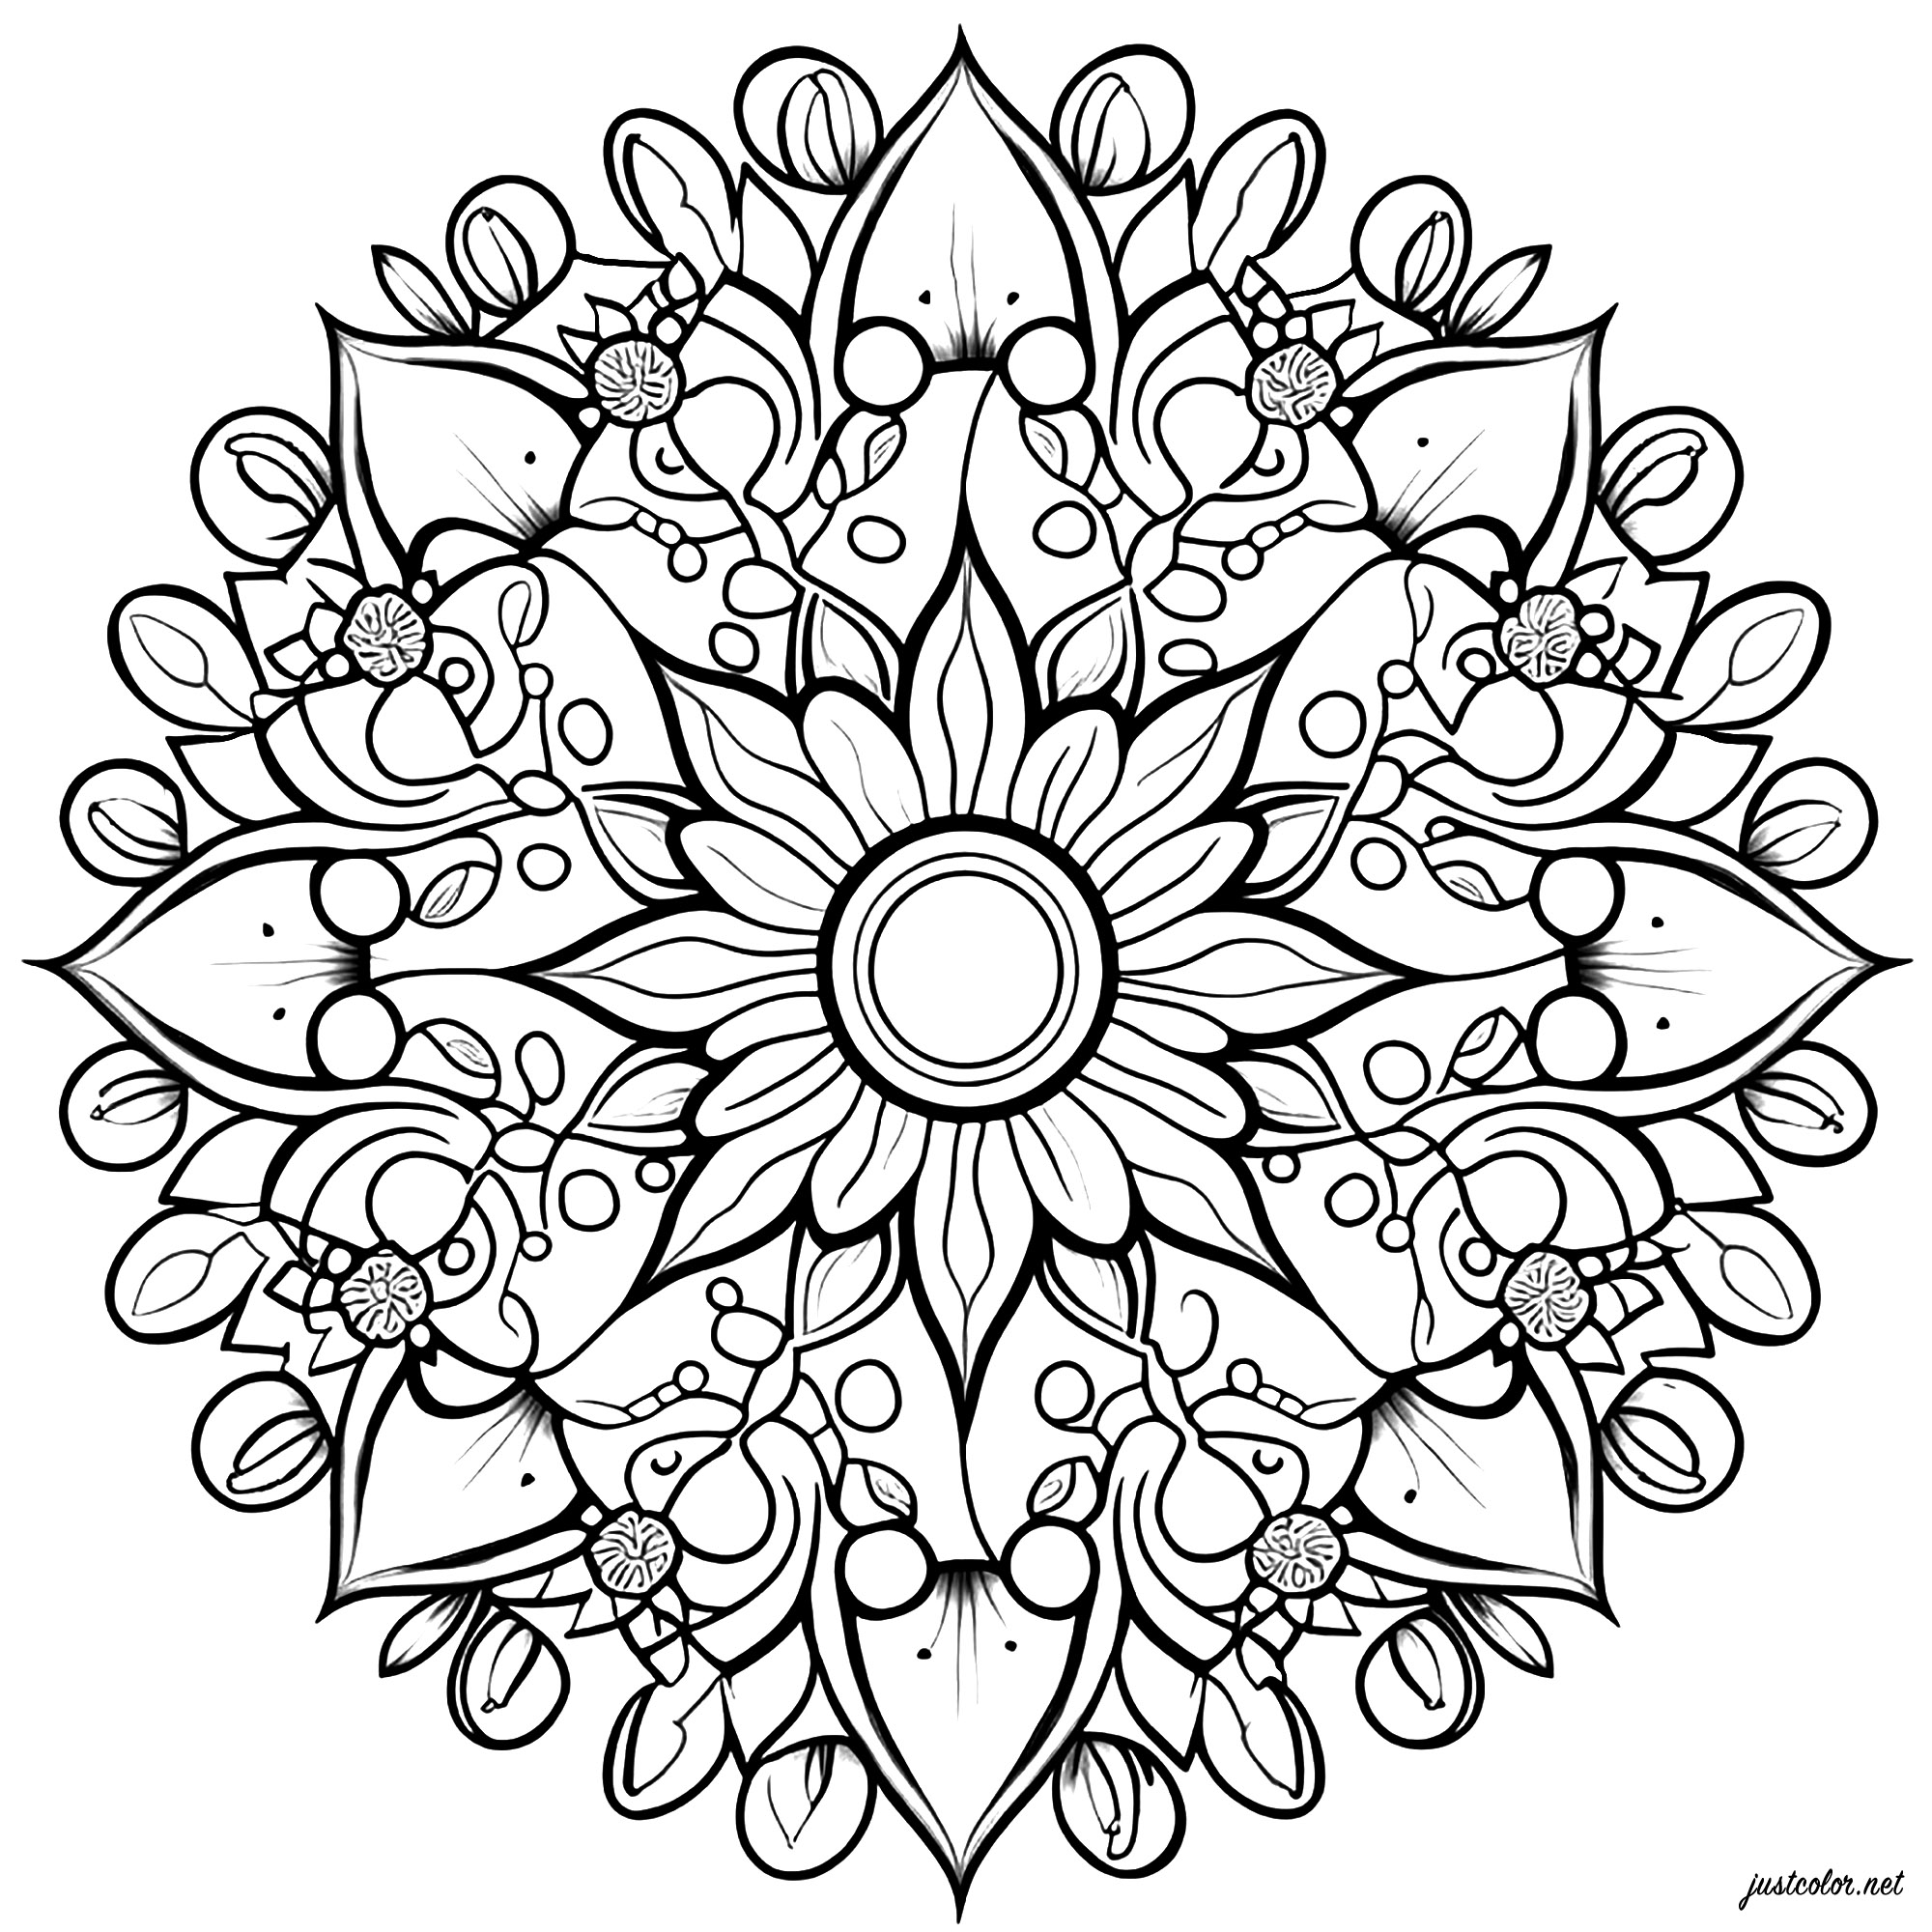 Diese Färbung ist ein schönes Mandala mit Blumen und harmonischen Pflanzenmustern. Sie besteht aus mehreren konzentrischen Zonen, die sich überschneiden und jeweils aus Blüten und Blättern mit zarten Mustern bestehen.